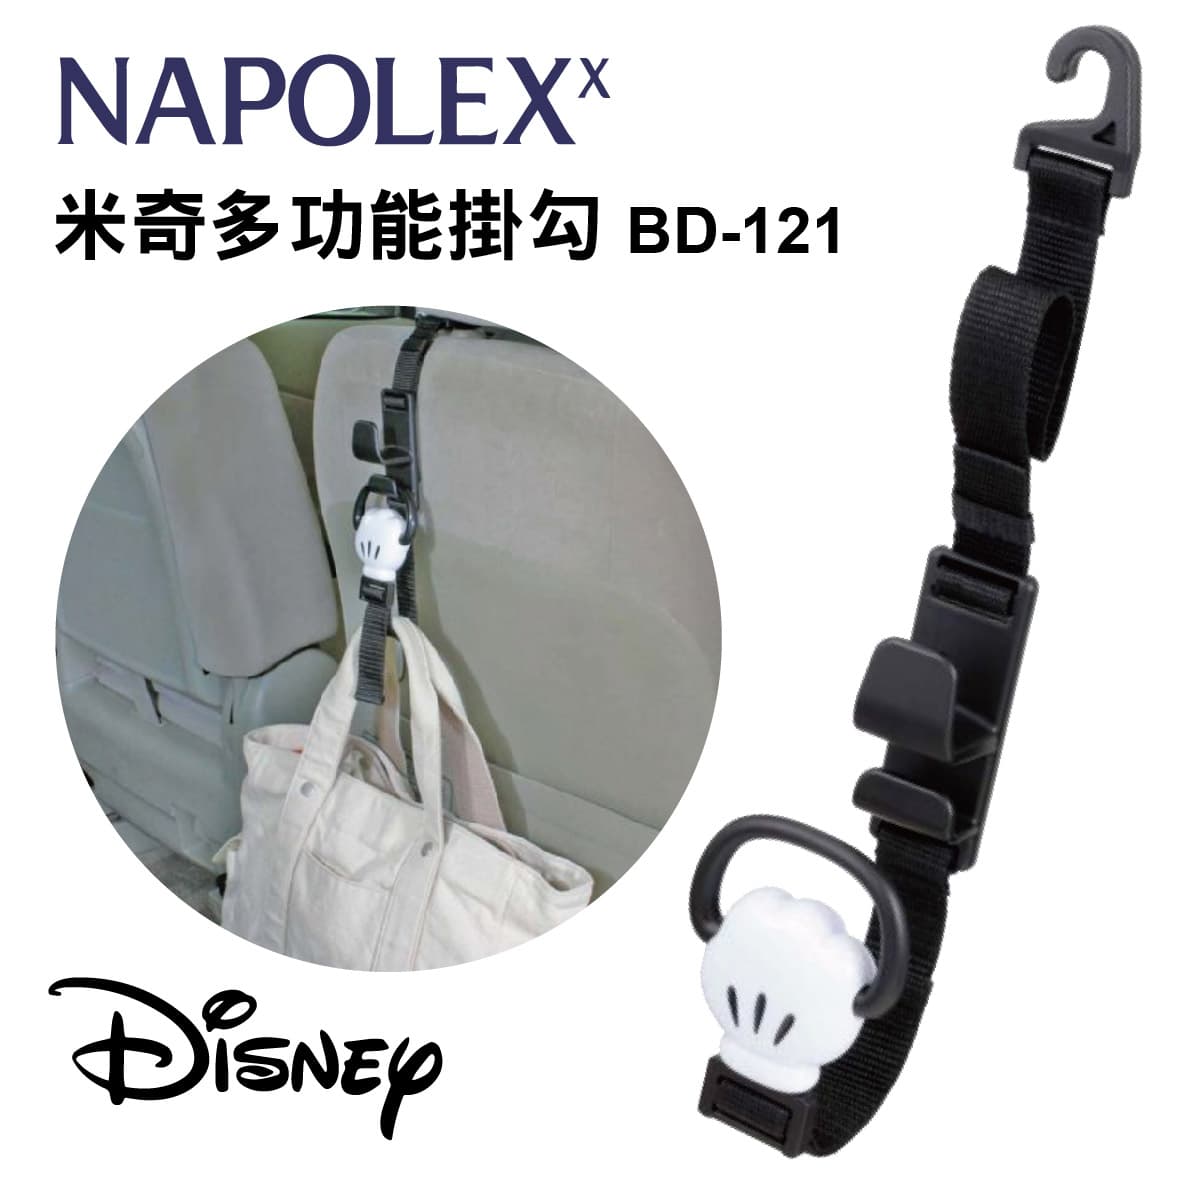 真便宜 NAPOLEX 迪士尼系列 BD-121 米奇多功能掛勾